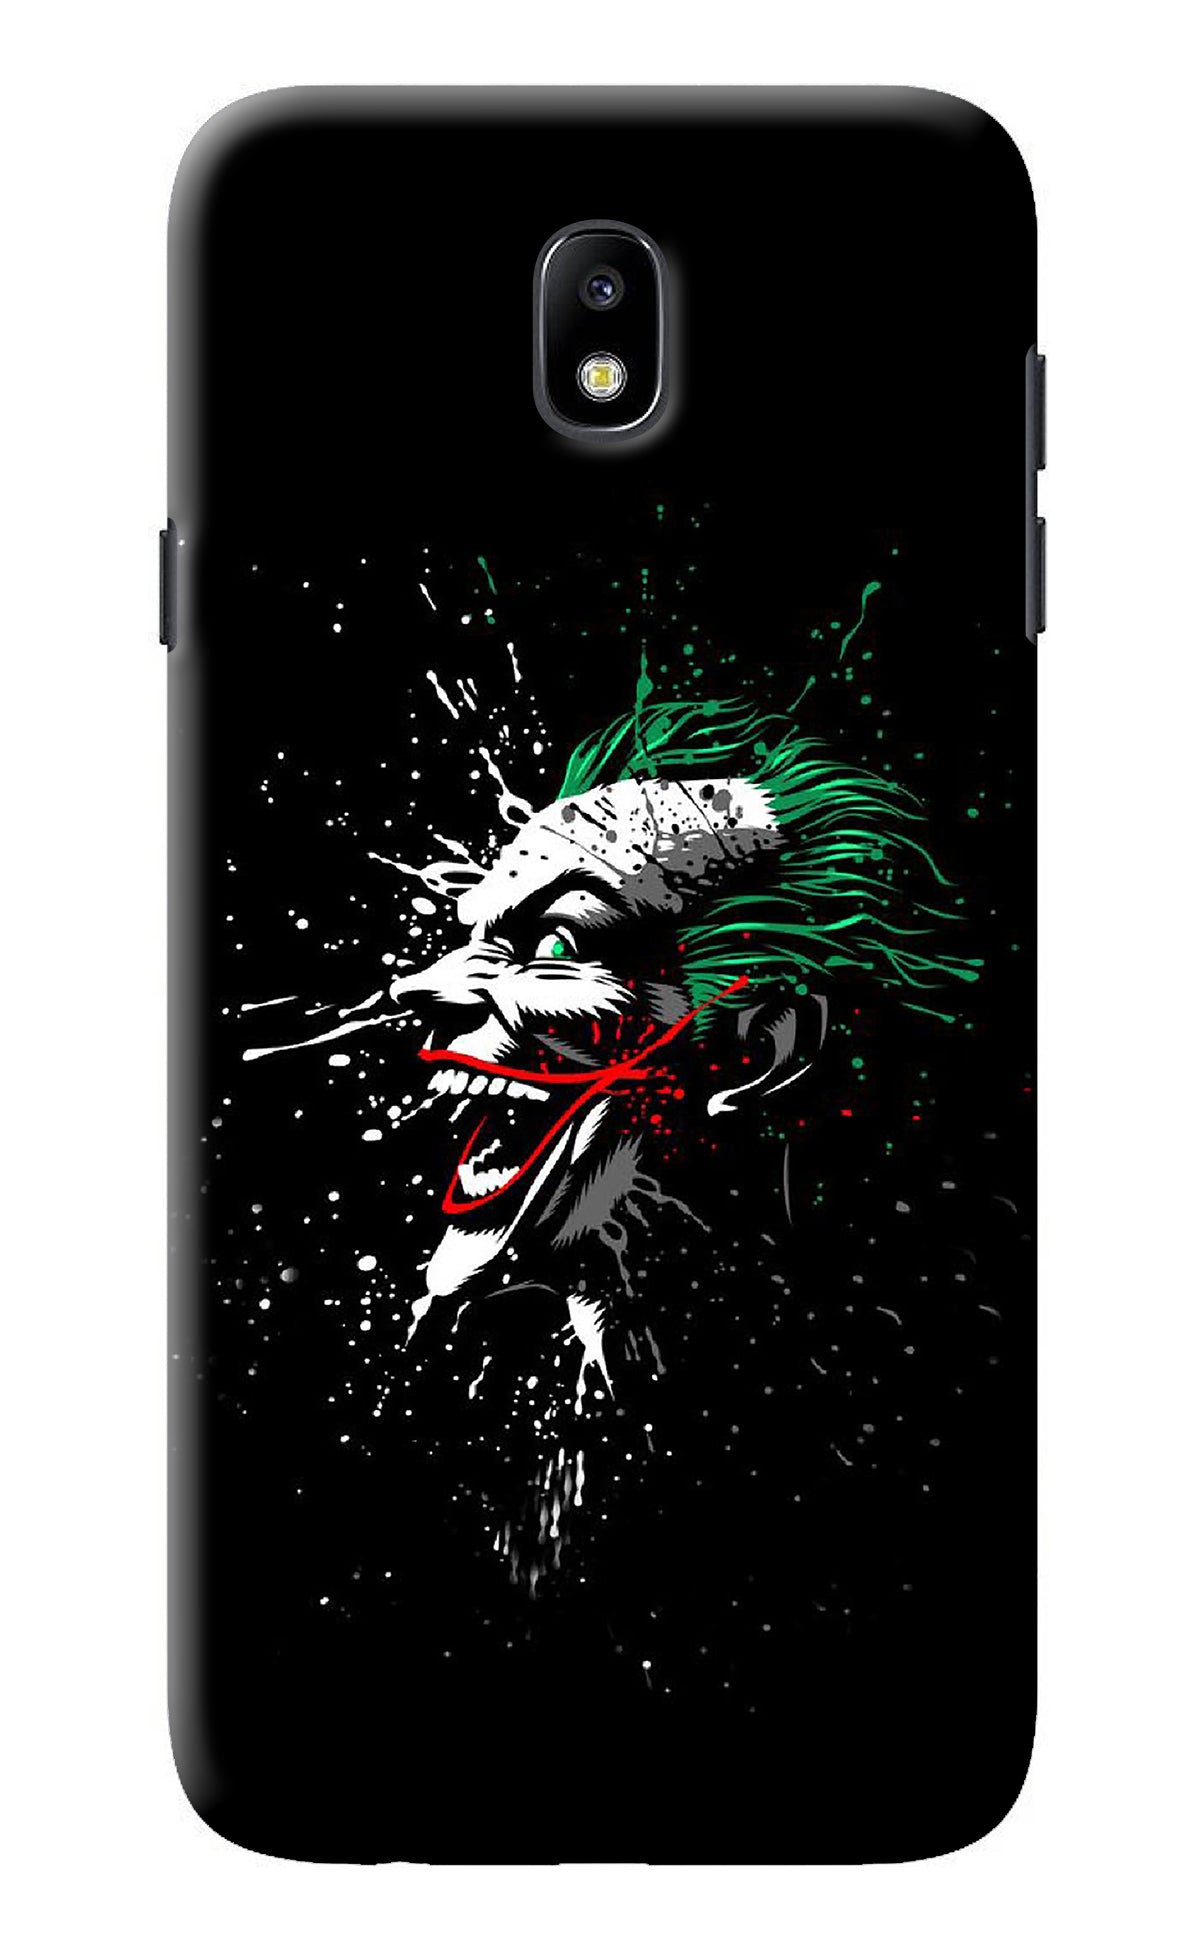 Joker Samsung J7 Pro Back Cover